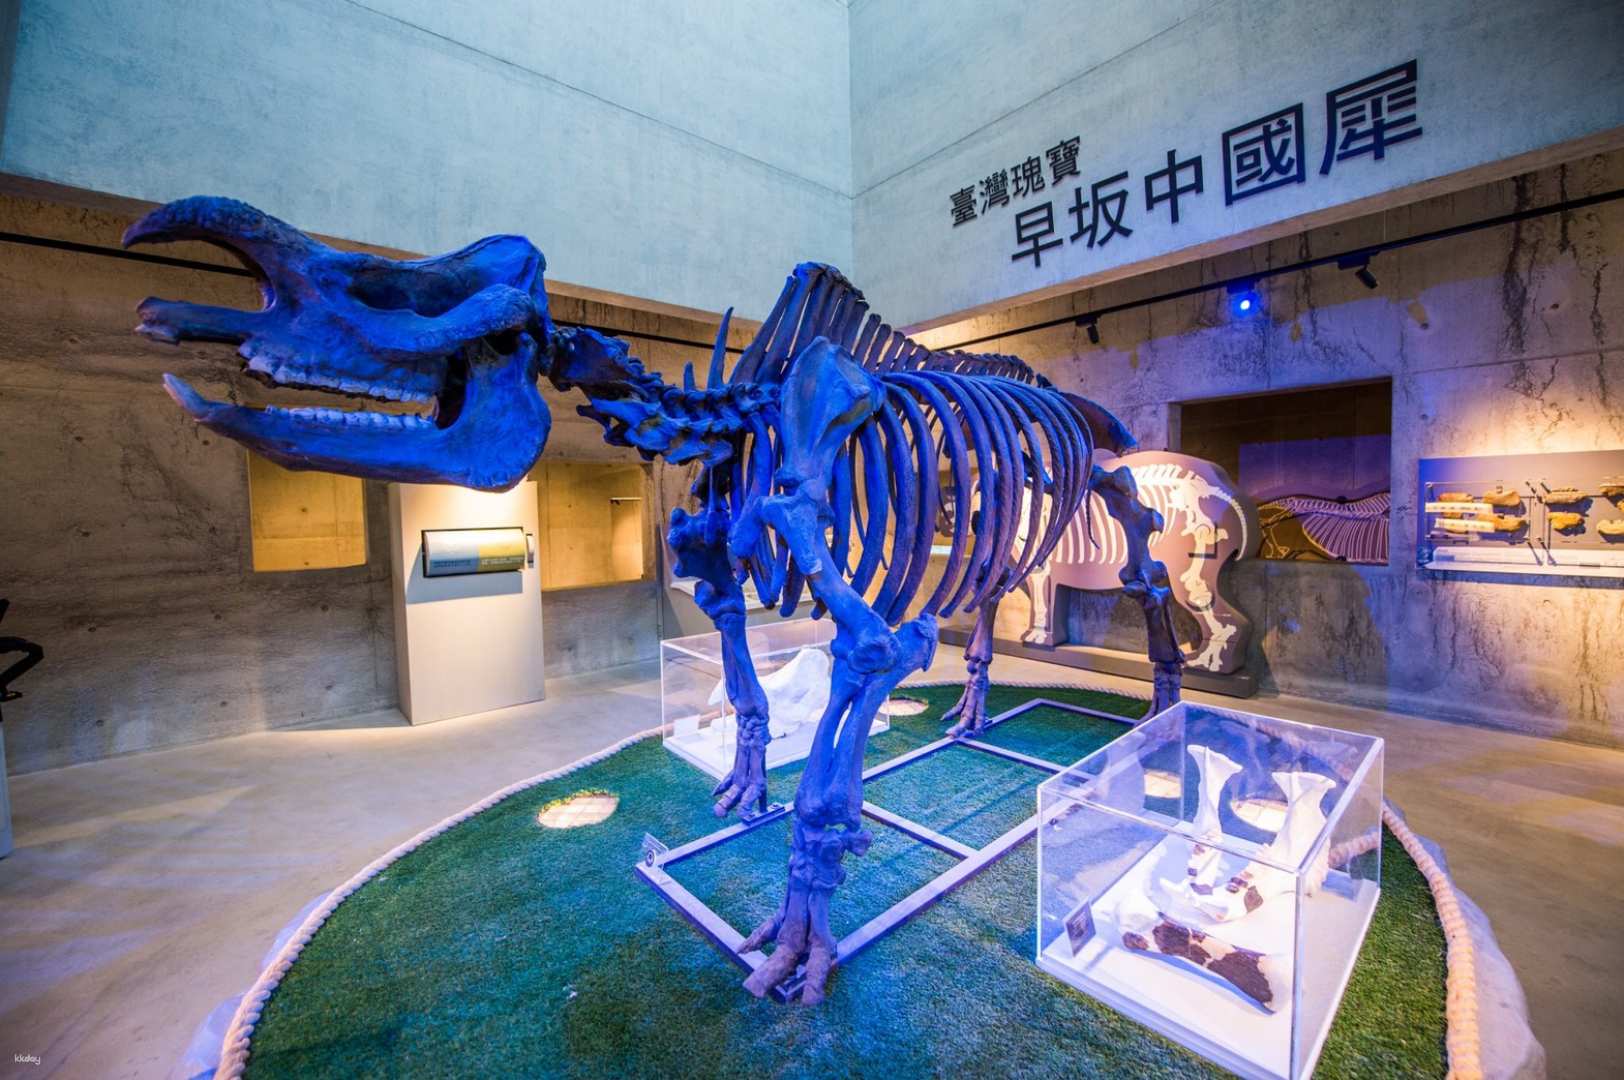 台南-臺南左鎮化石博物館門票| 9折優惠